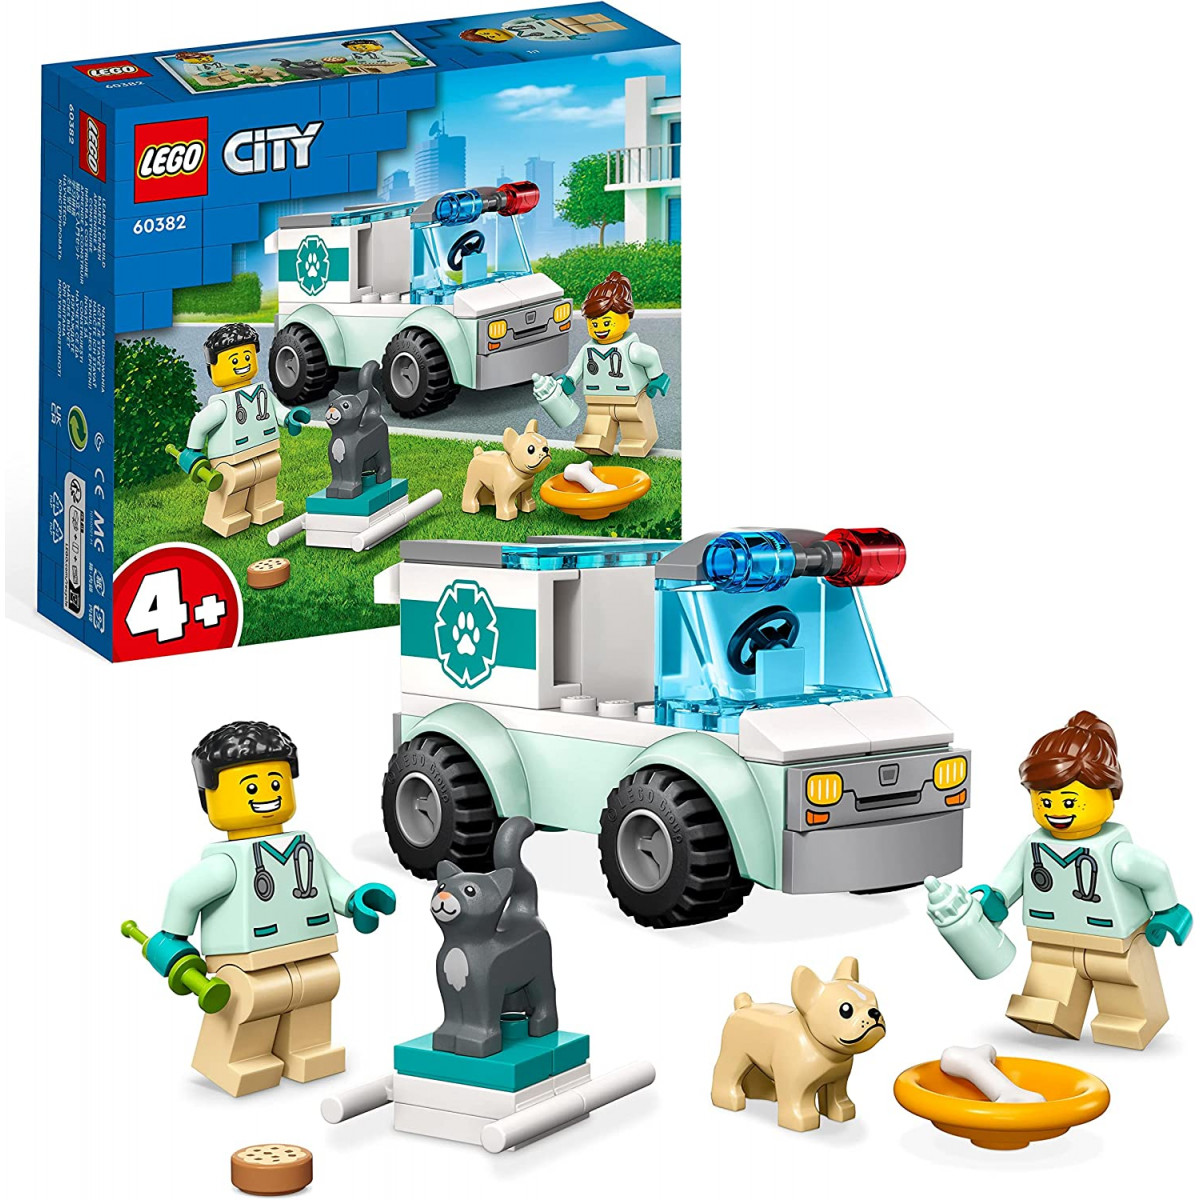 Lego 60382 - City 4+ Vet Van Rescue Animal Set